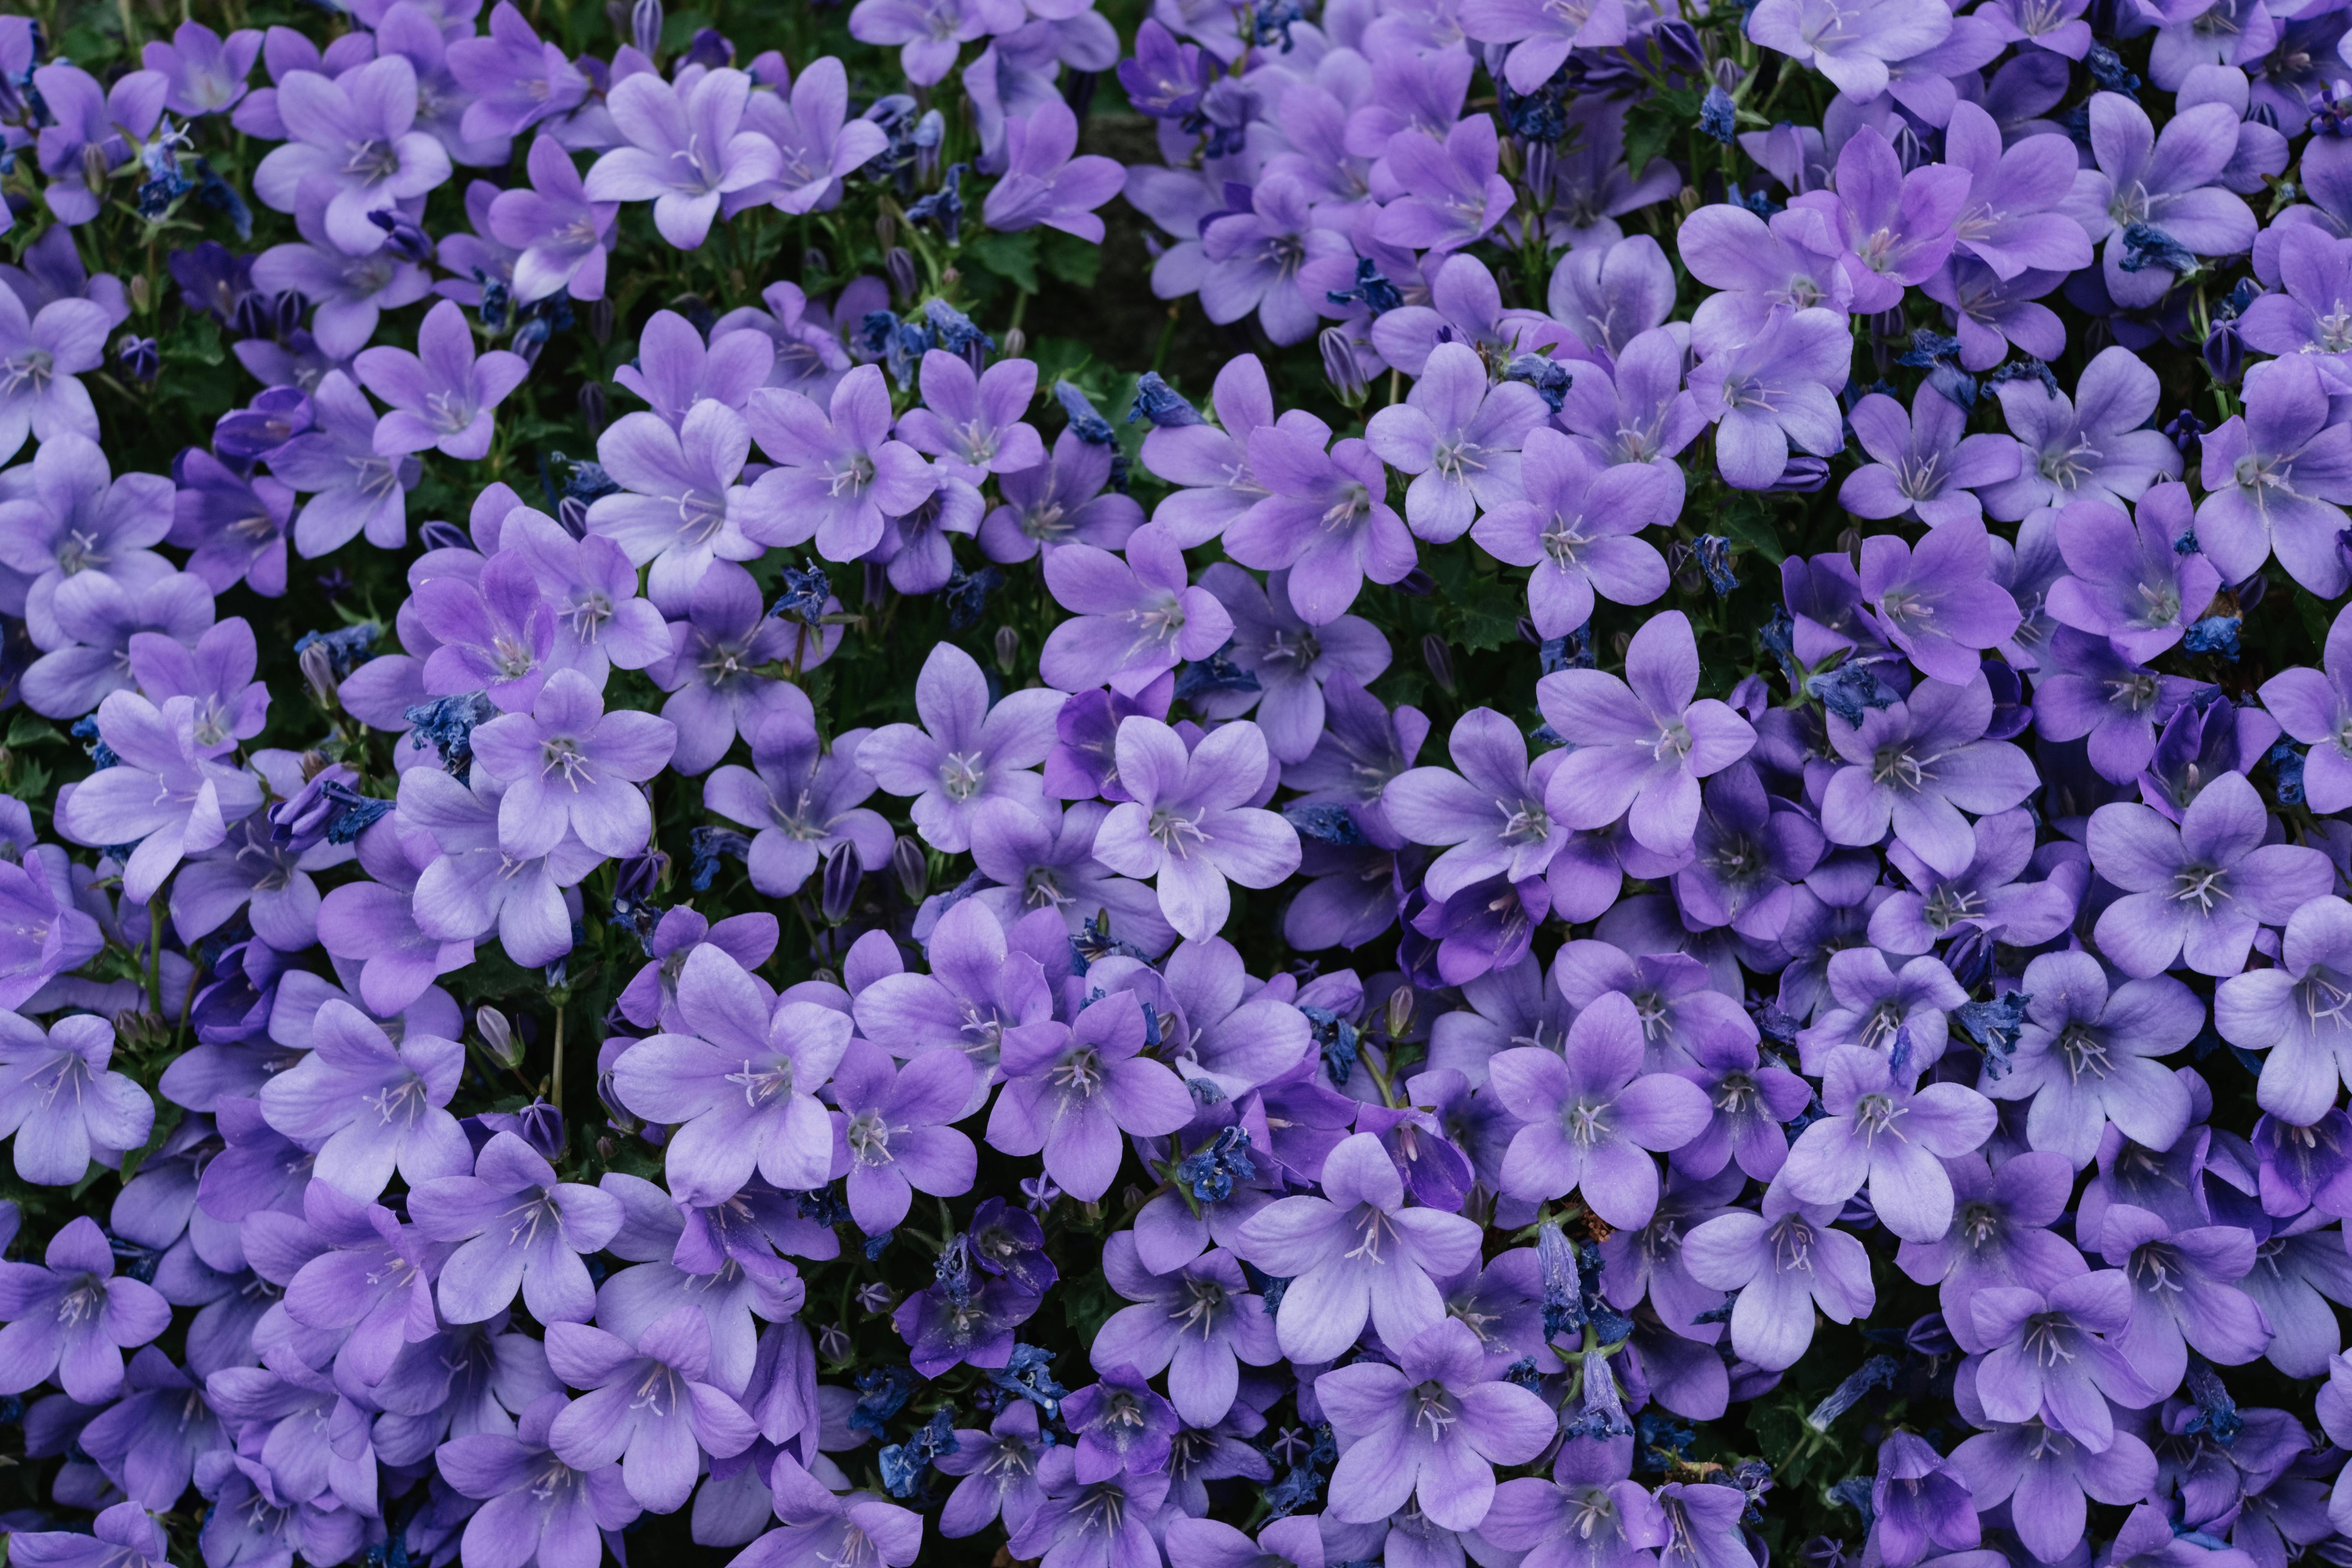 100,000+ Best Purple Flowers Photos · 100% Free Download · Pexels